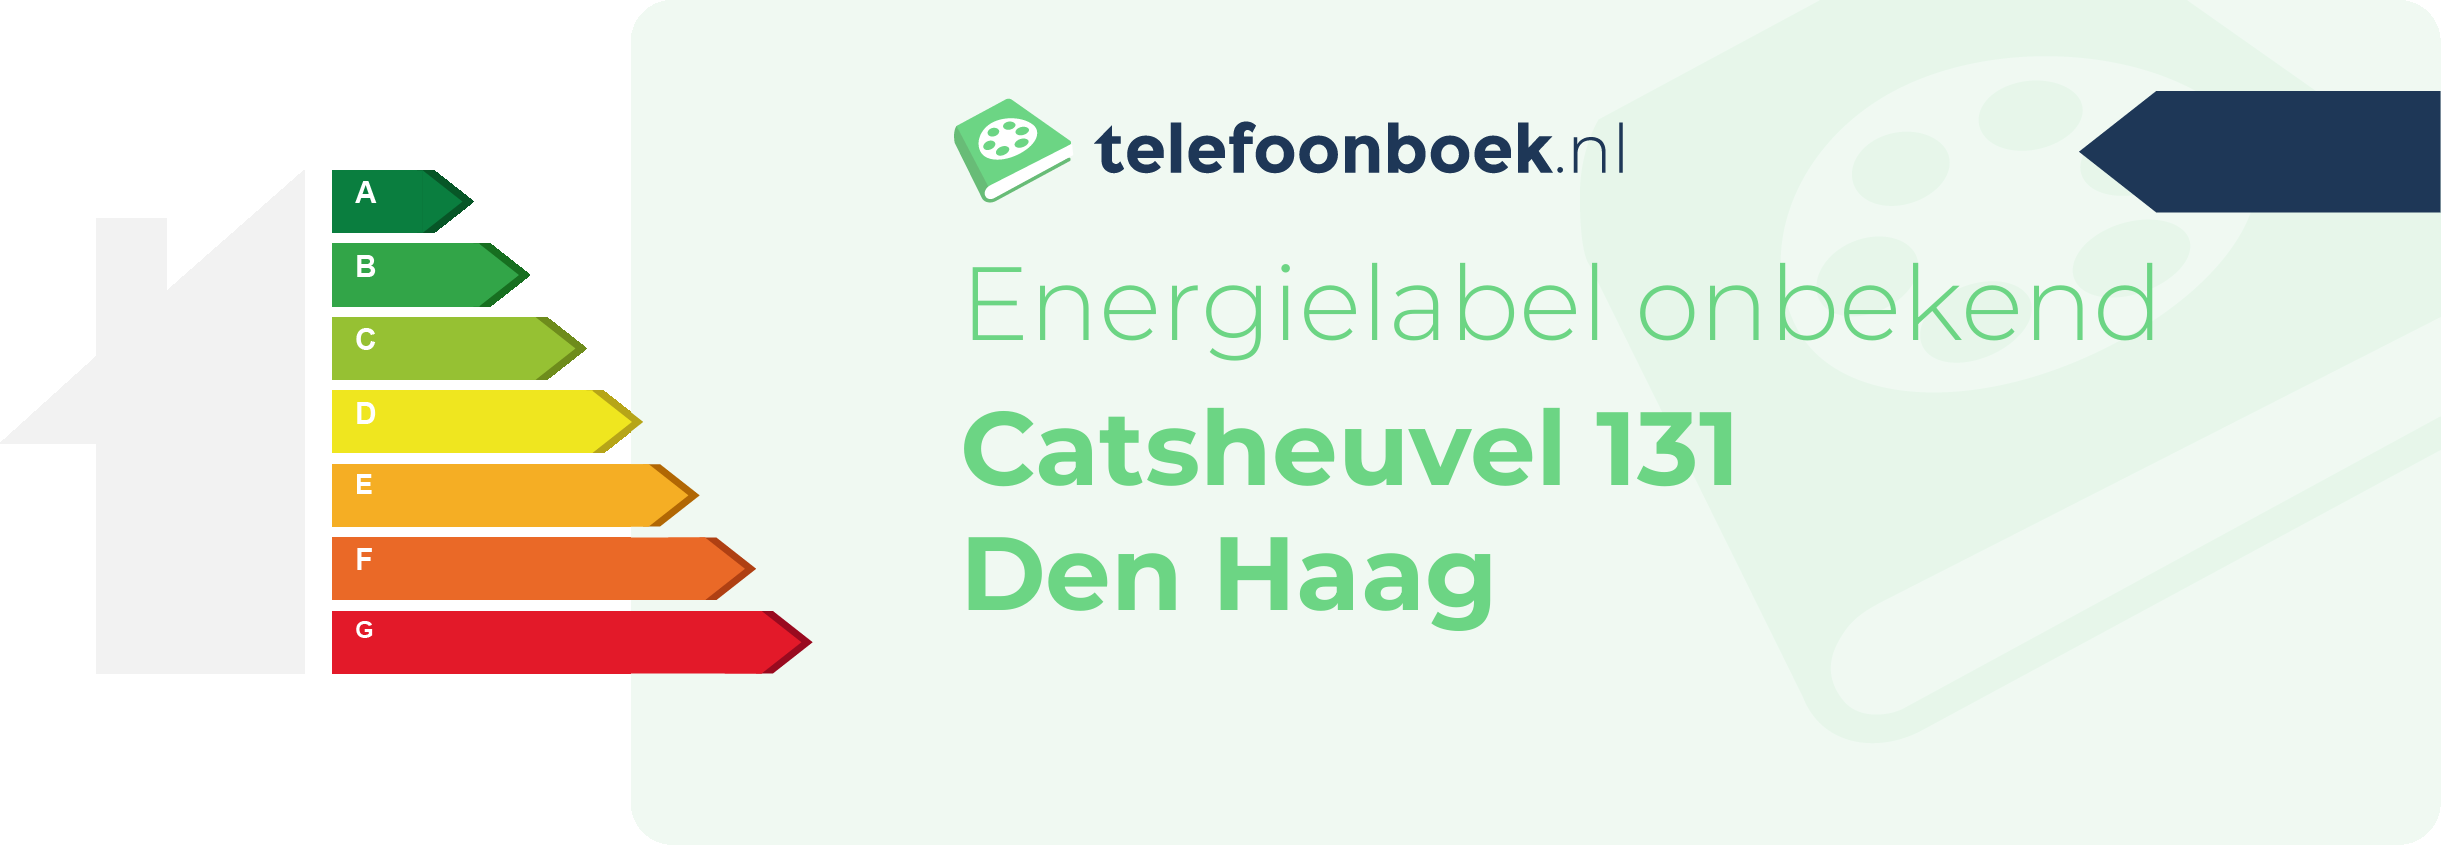 Energielabel Catsheuvel 131 Den Haag